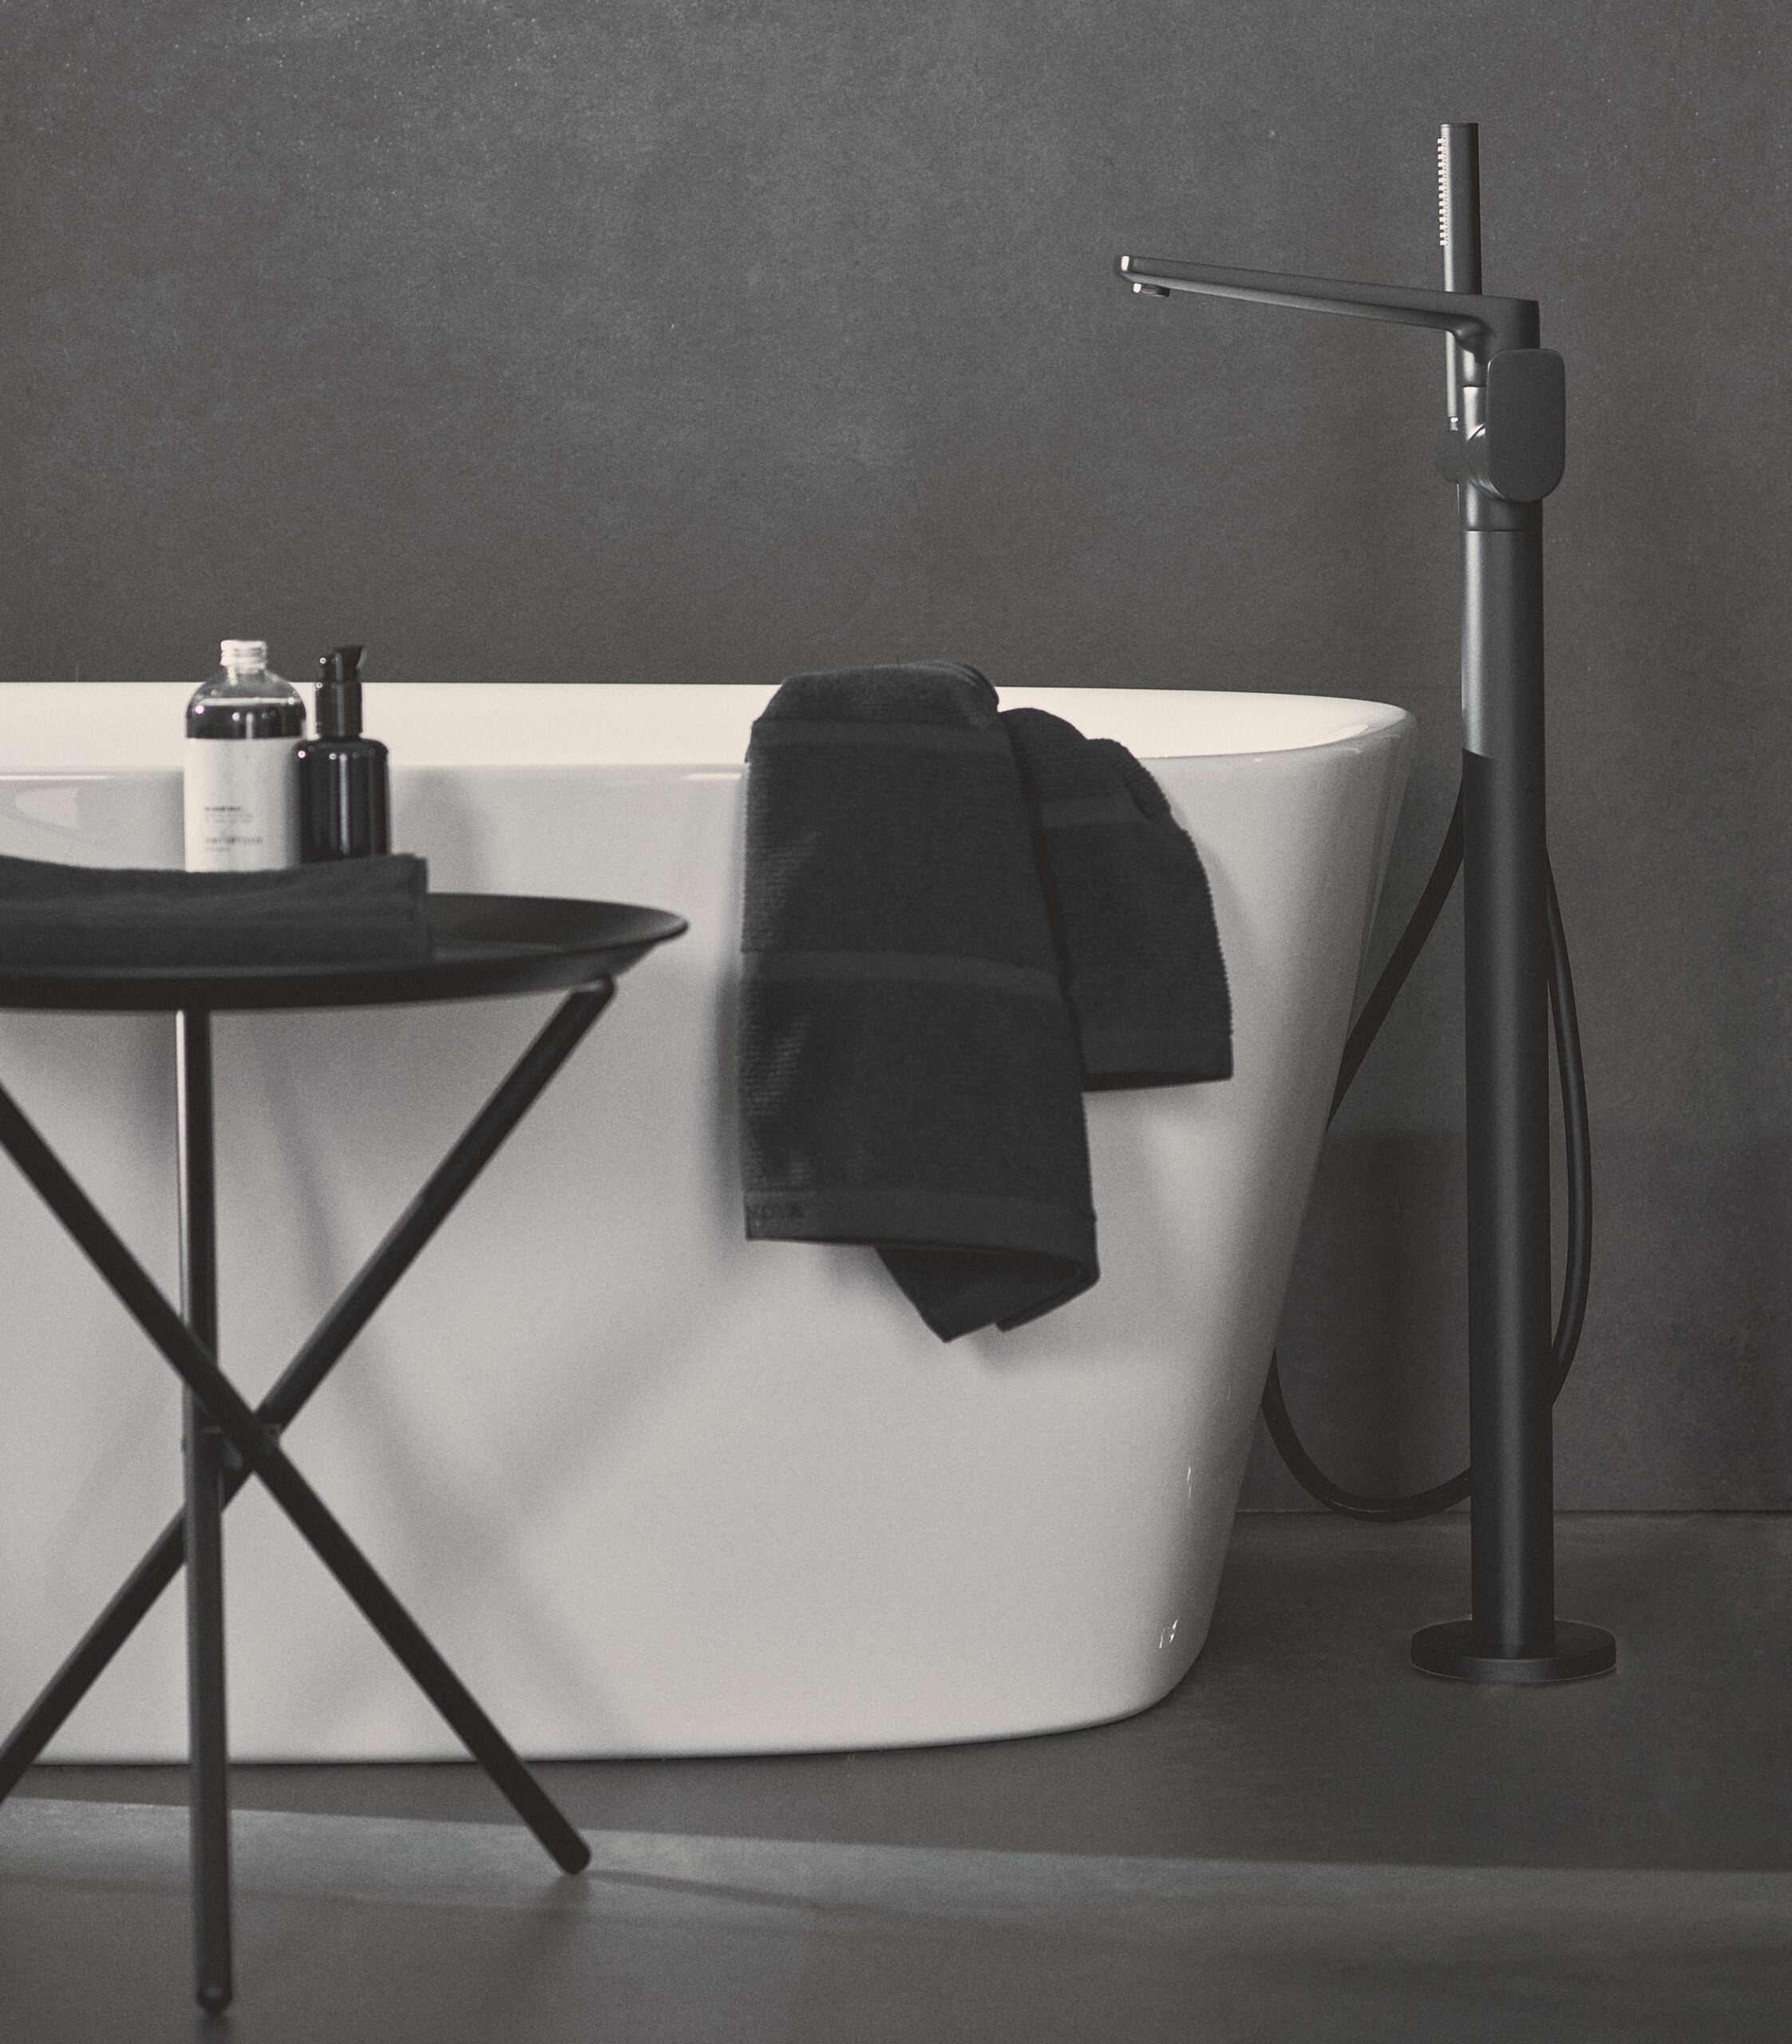 Robinetterie, céramique, parois de douche, meubles : osez la différence avec la nouvelle finition Noir Mat d'Ideal Standard